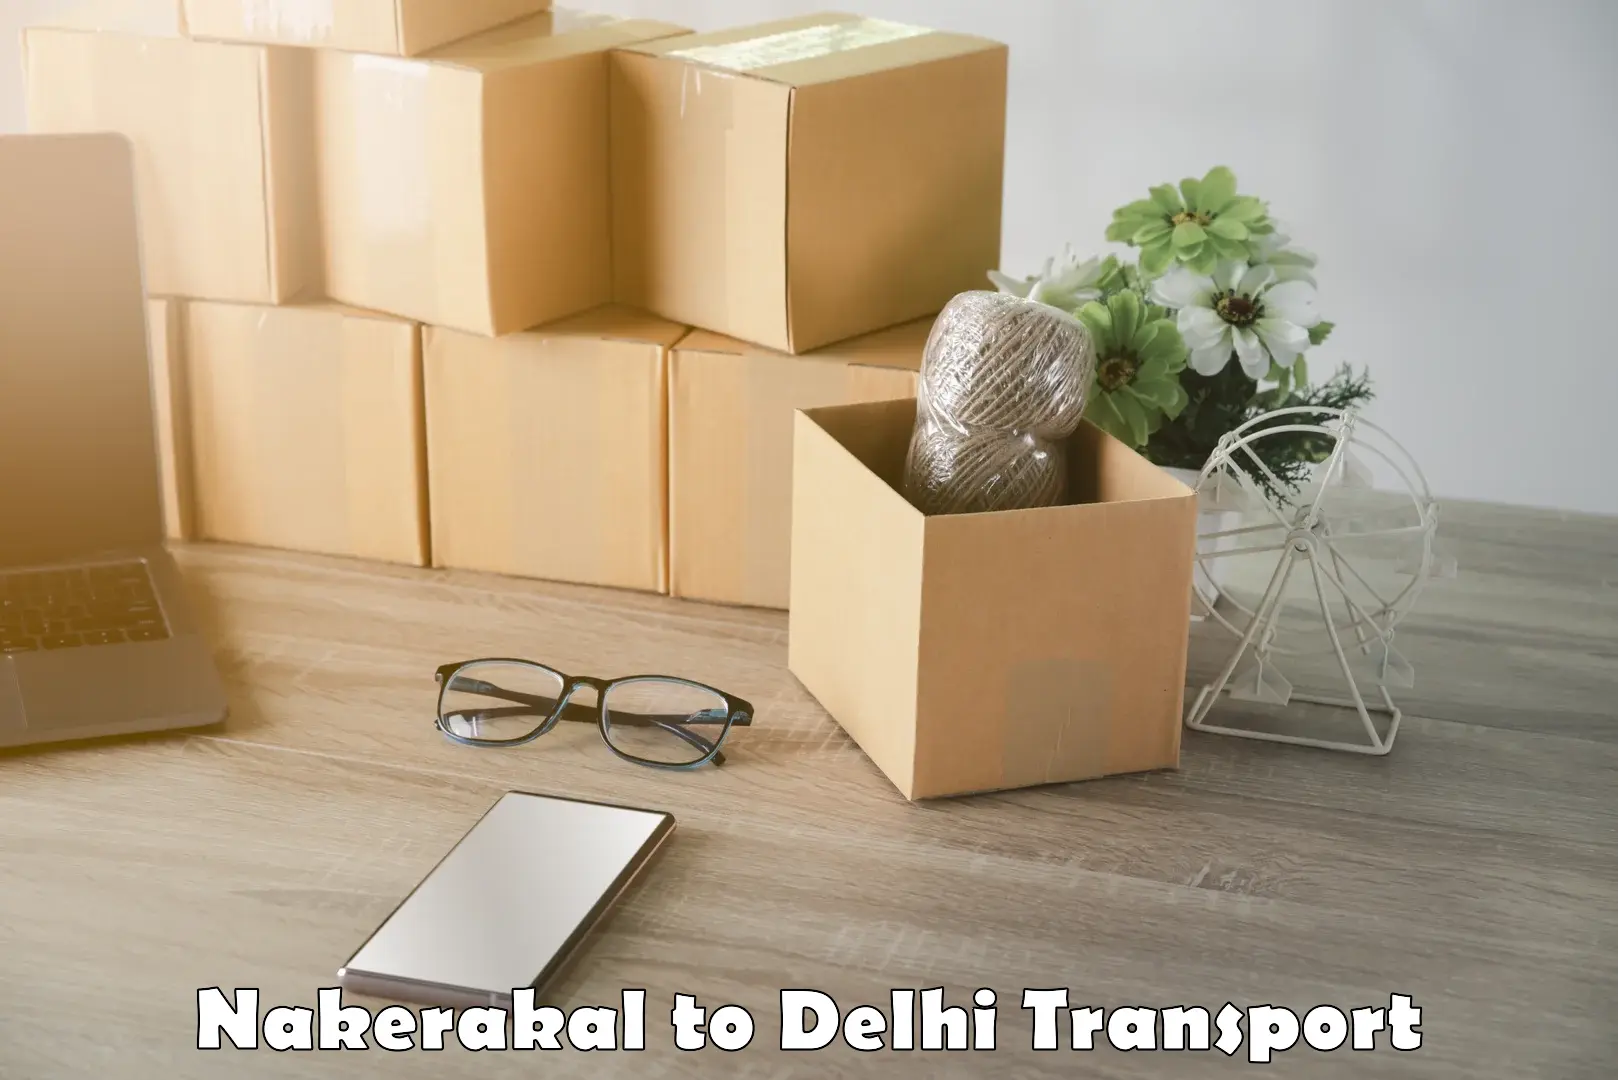 Daily transport service Nakerakal to Delhi